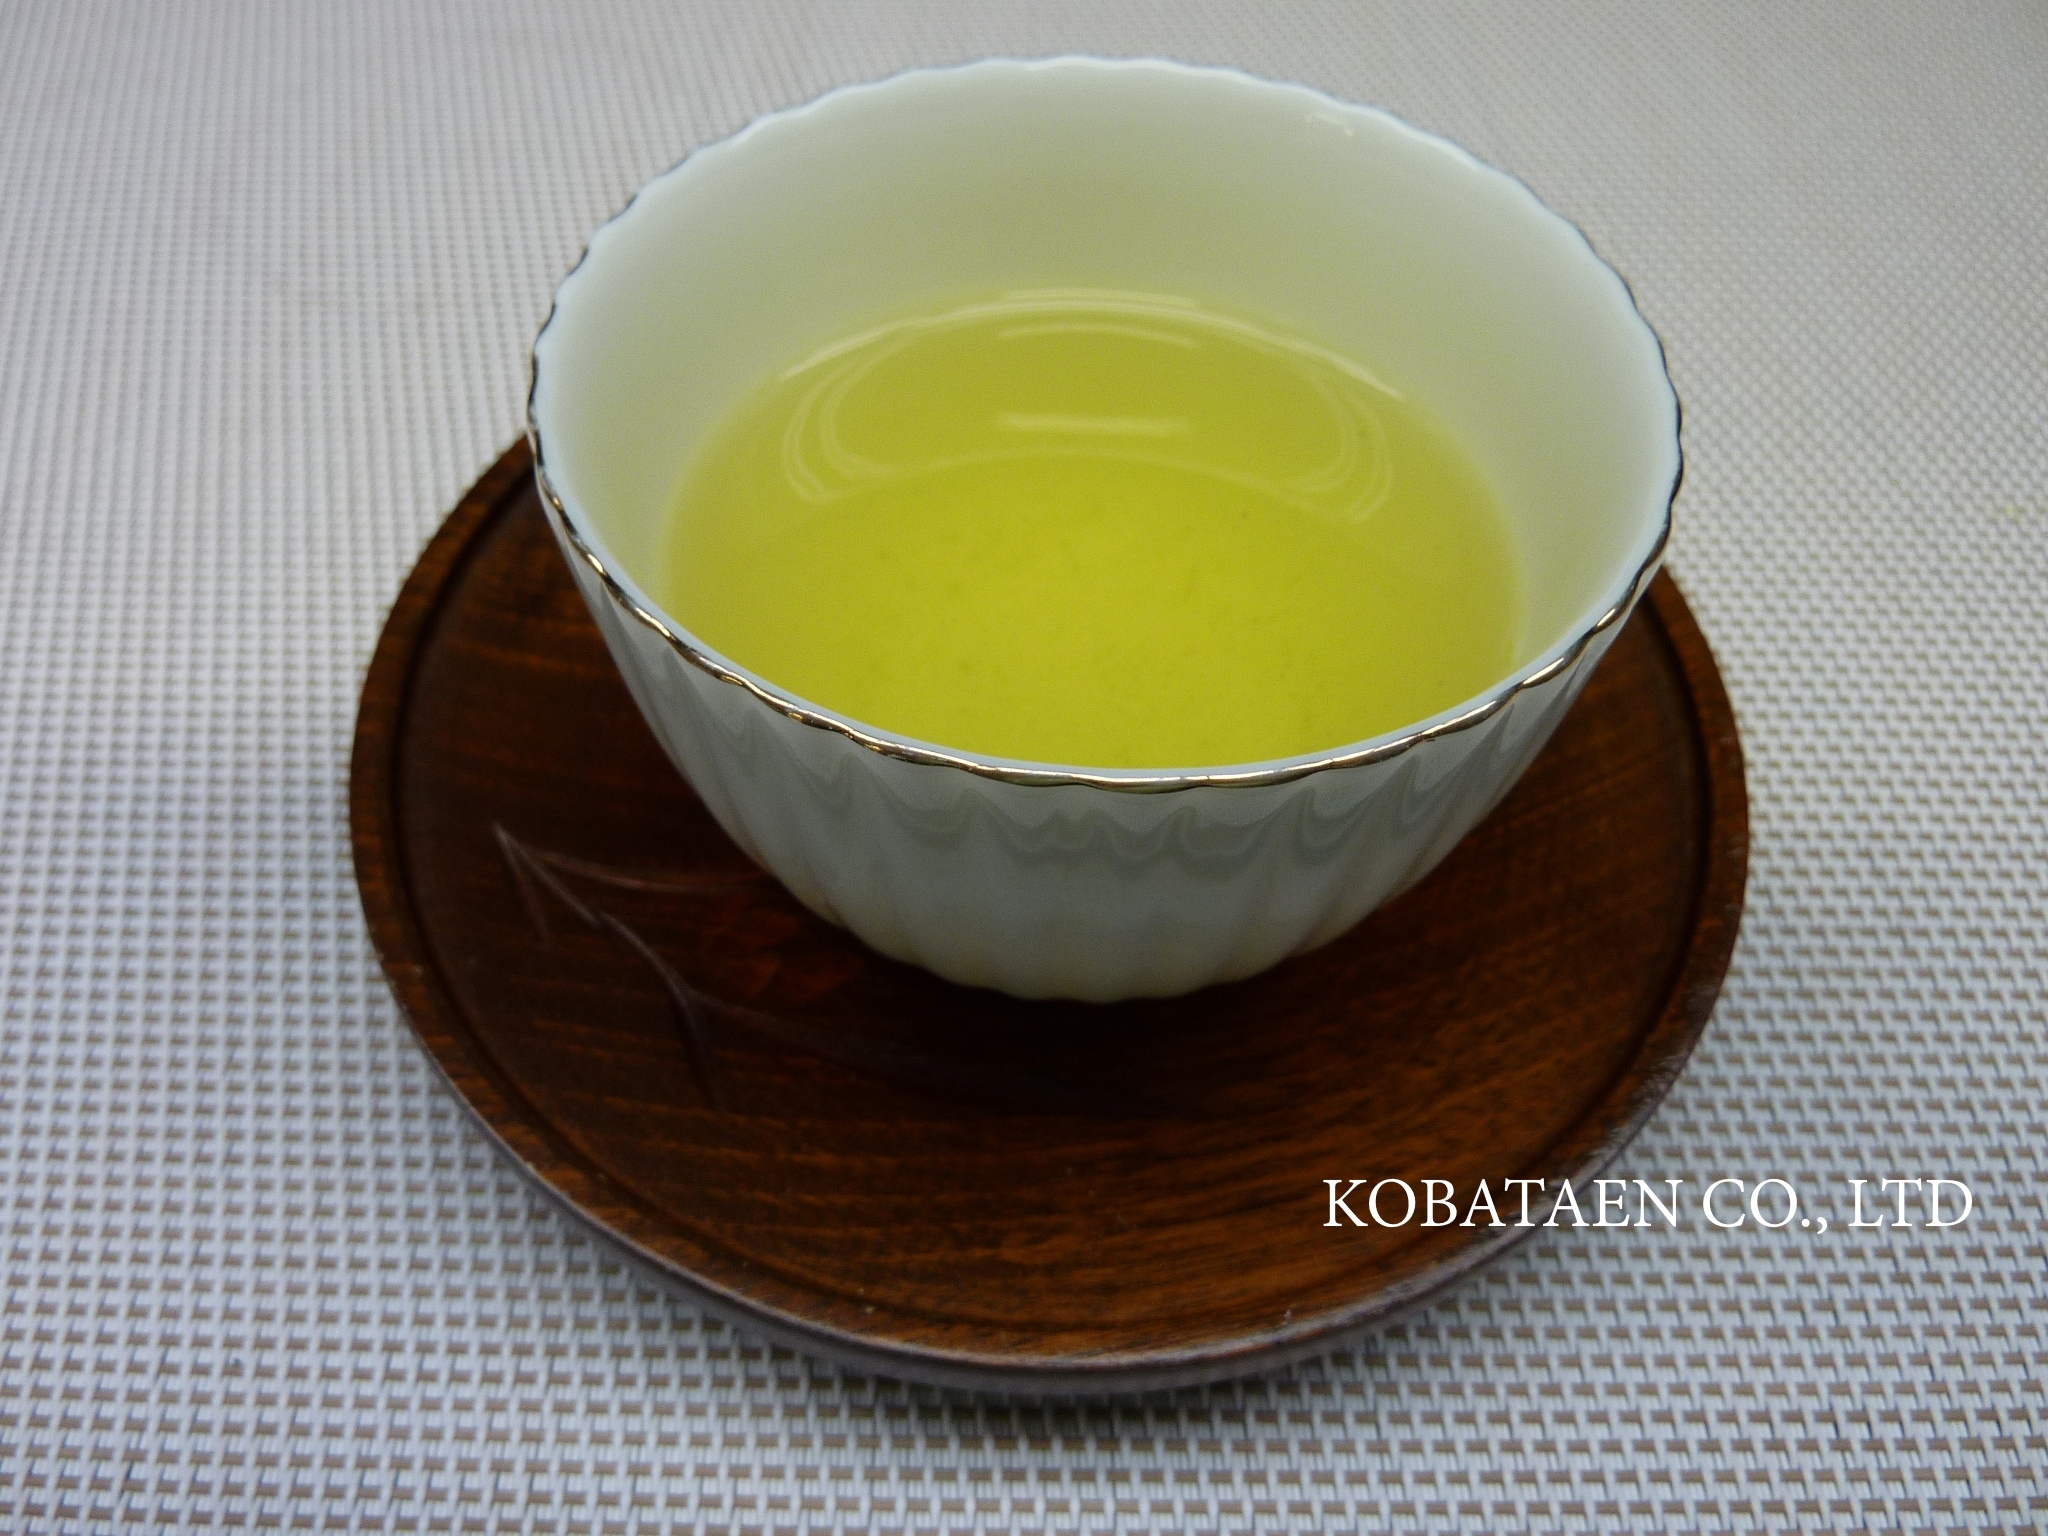 Japanese green tea Sencha loose leaf bulk 25kg from Japan Kyoto